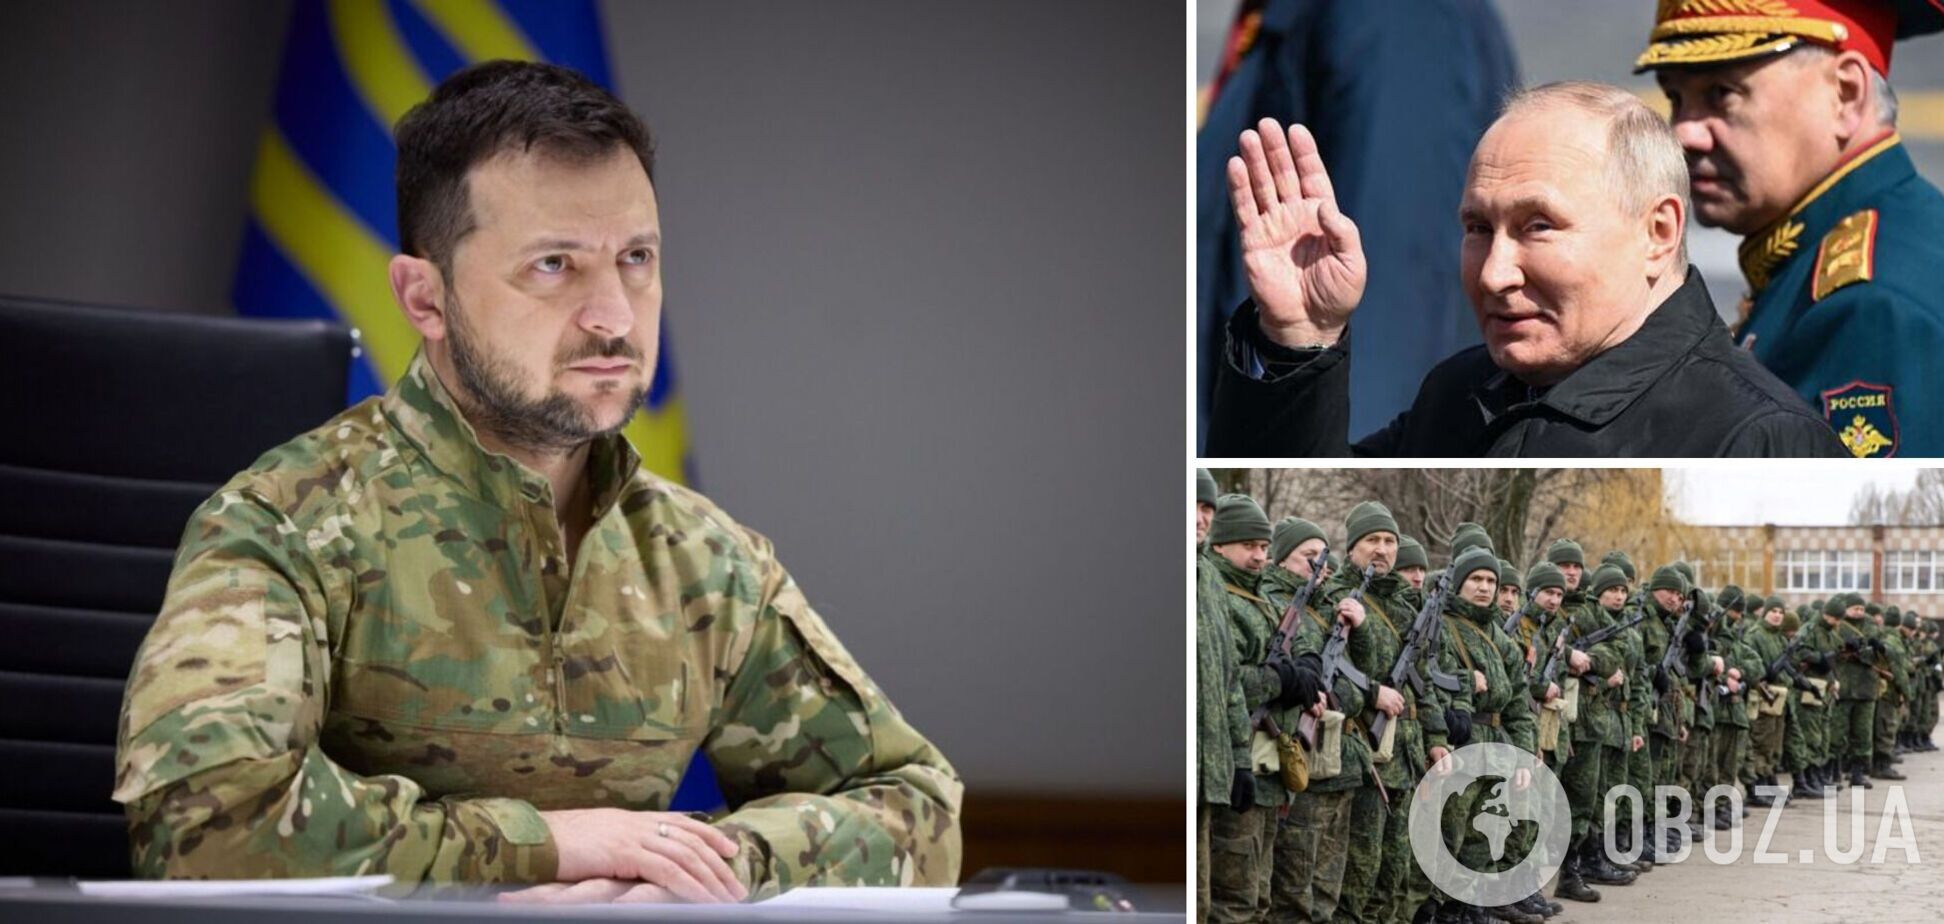 Путин хочет утопить Украину в крови российских солдат, – Зеленский в интервью Bild